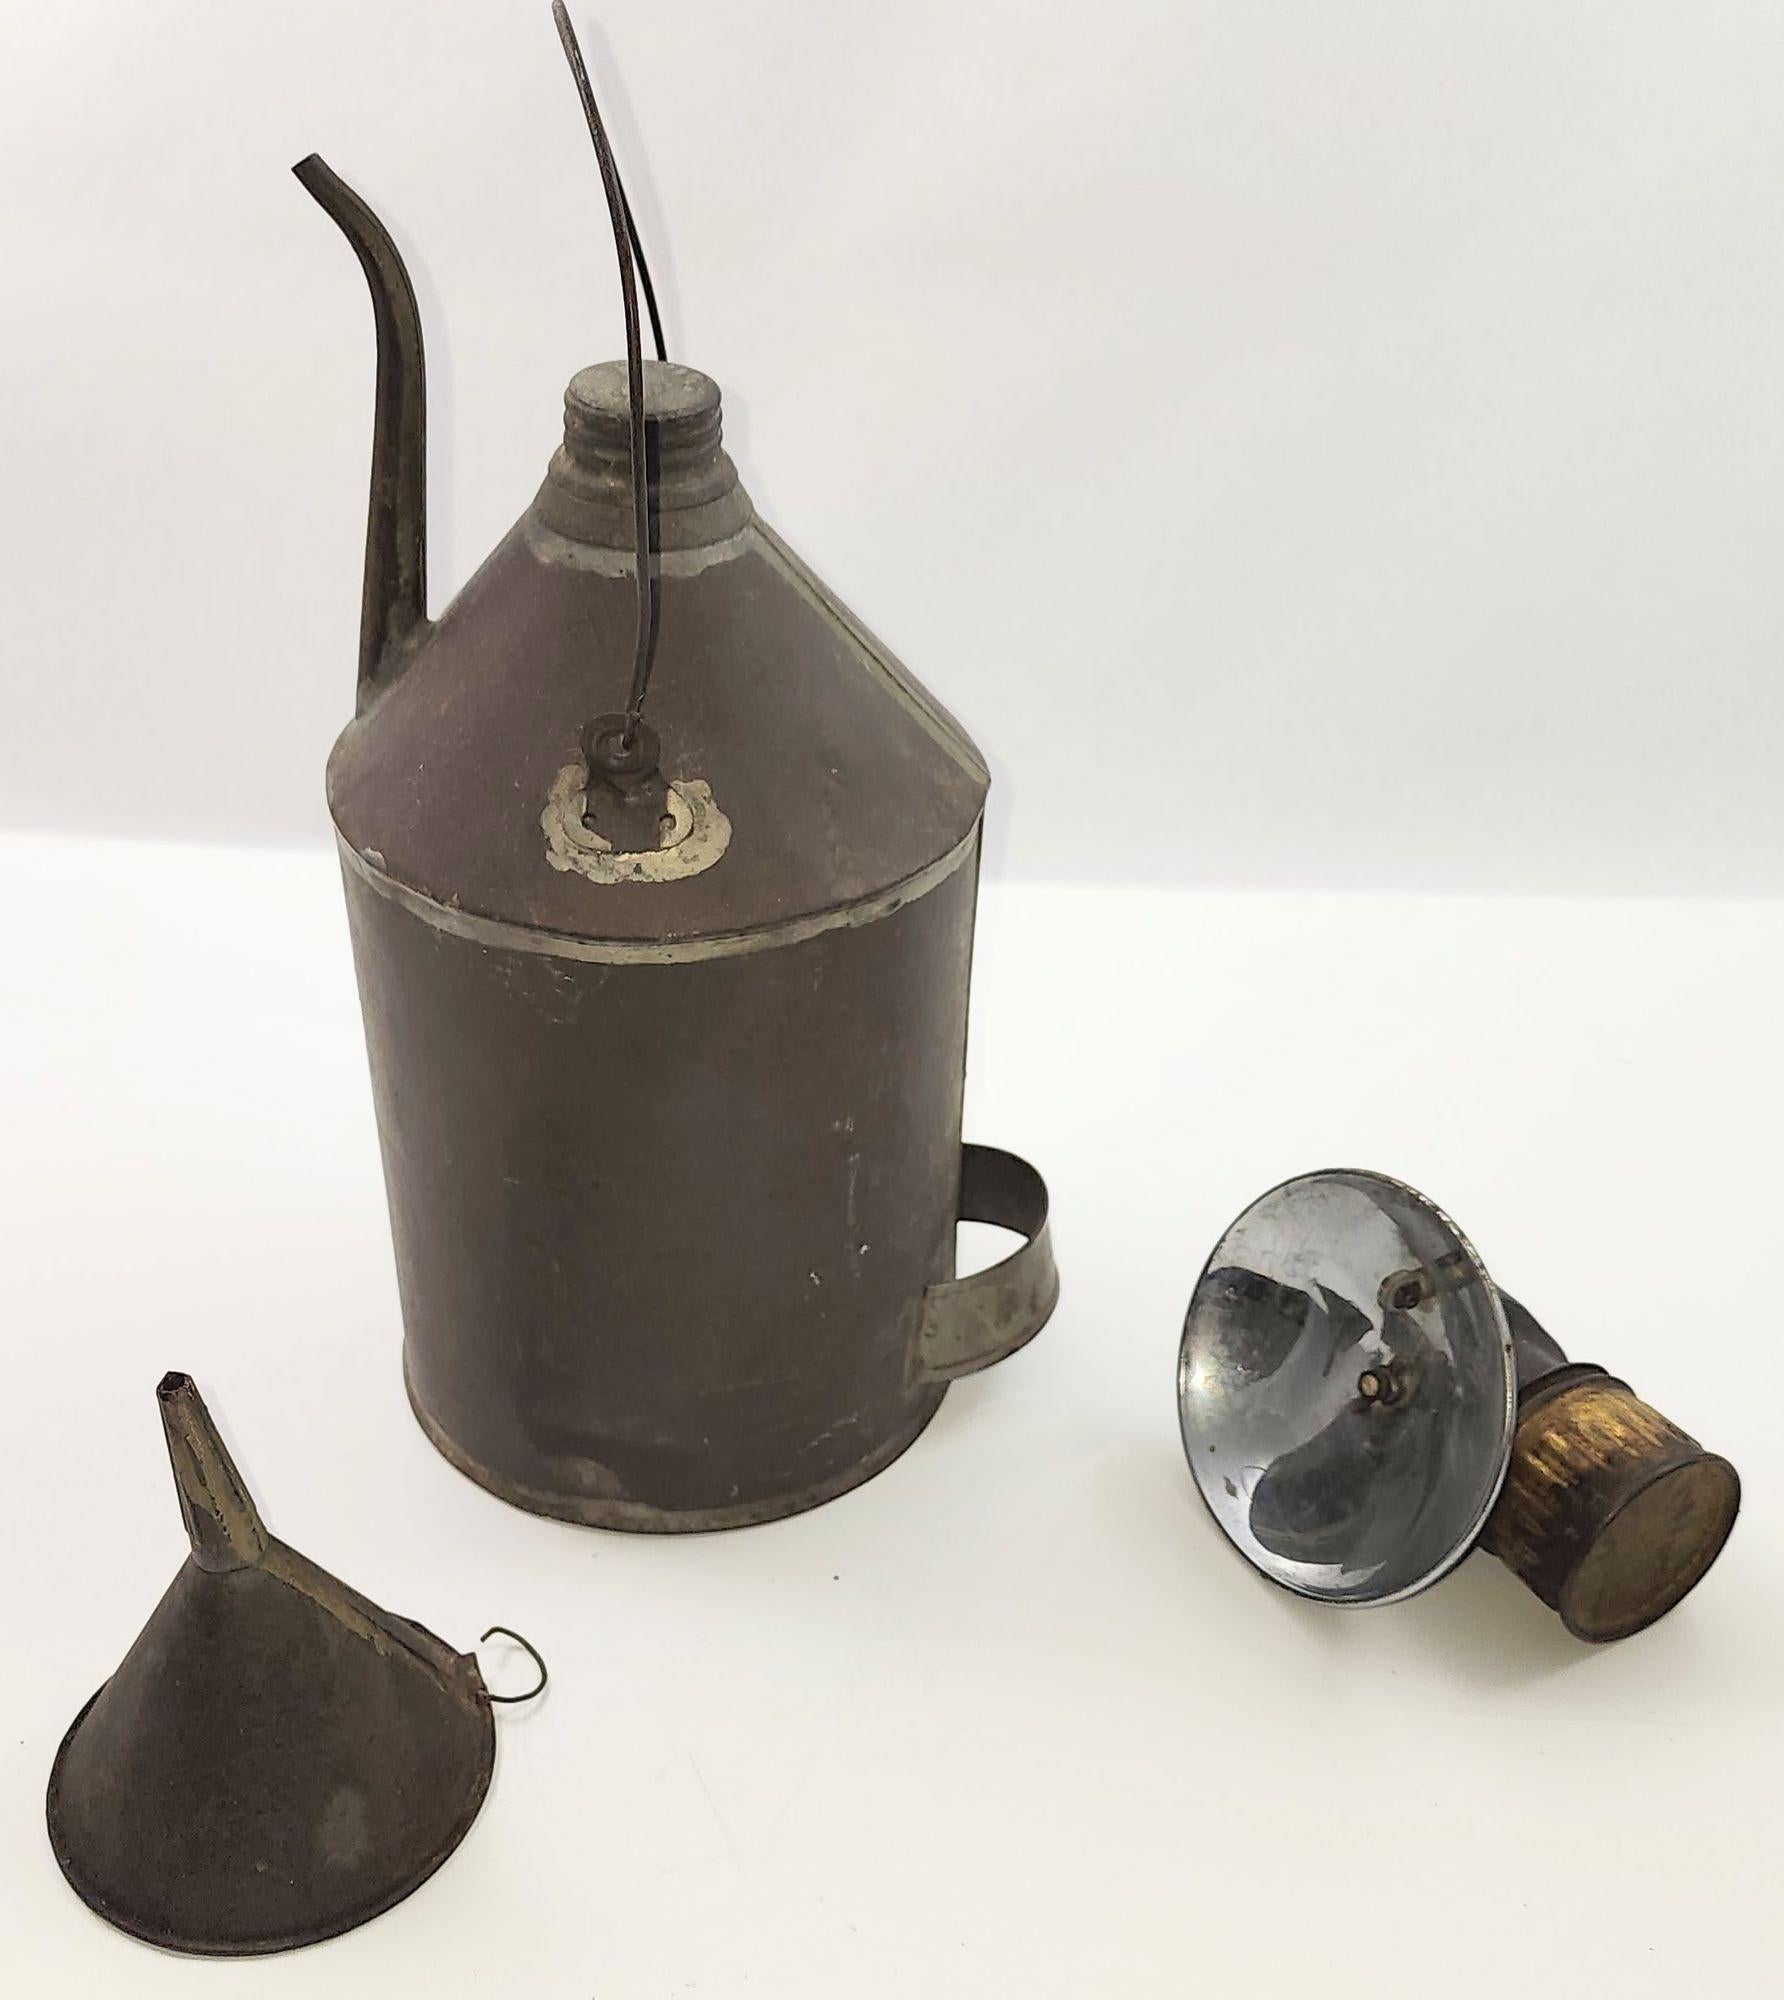 Ancienne lampe de mineur de charbon en carbure de Justrite, datant des années 1900, conçue pour être portée sur un casque, avec un bidon d'huile de charbon et un entonnoir en fer-blanc. Fabriquées à la main par la célèbre Justrite Manufacturing